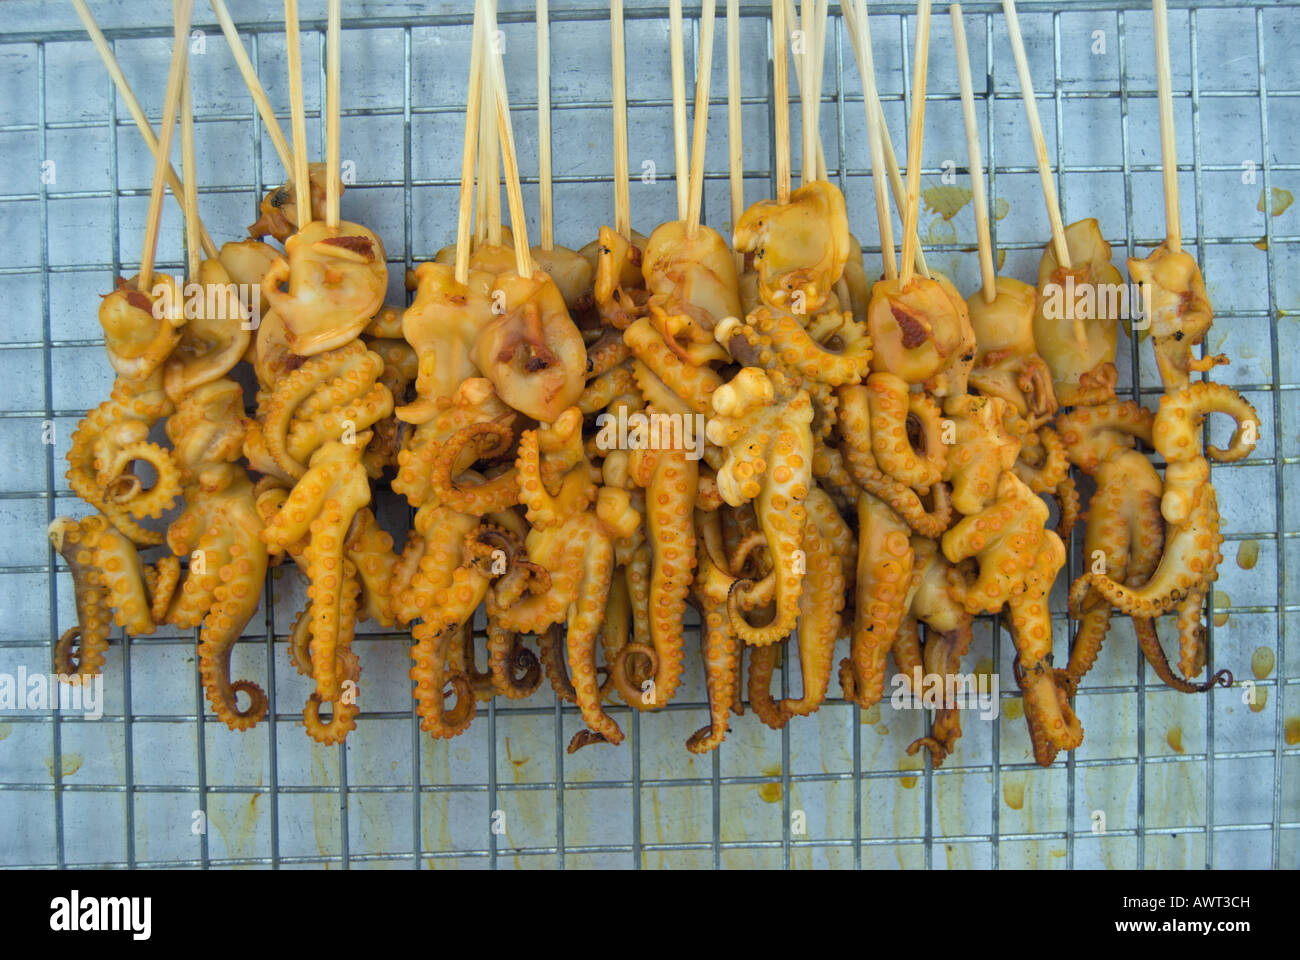 Bébé fraichement grillés octopus sur des bâtons, offert dans un marché à phetchabun, Thaïlande Banque D'Images